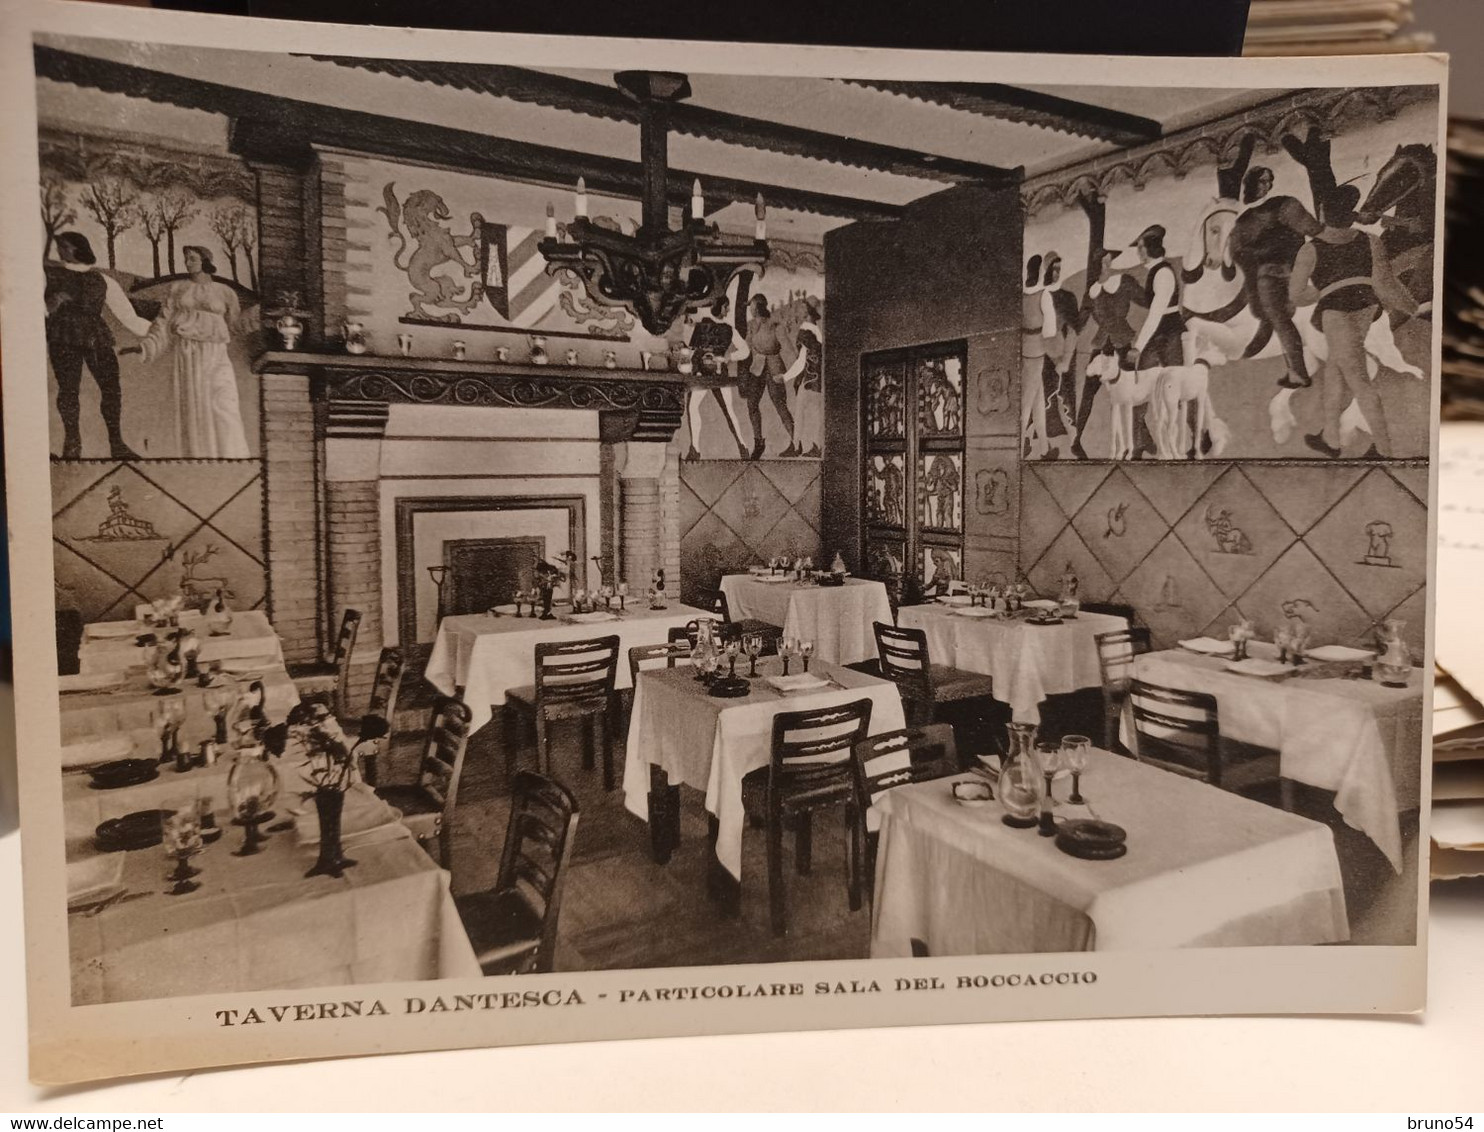 Cartolina Torino Taverna Dantesca Particolari Sala Del Boccaccio Via Nizza 5 ,1939 - Bars, Hotels & Restaurants